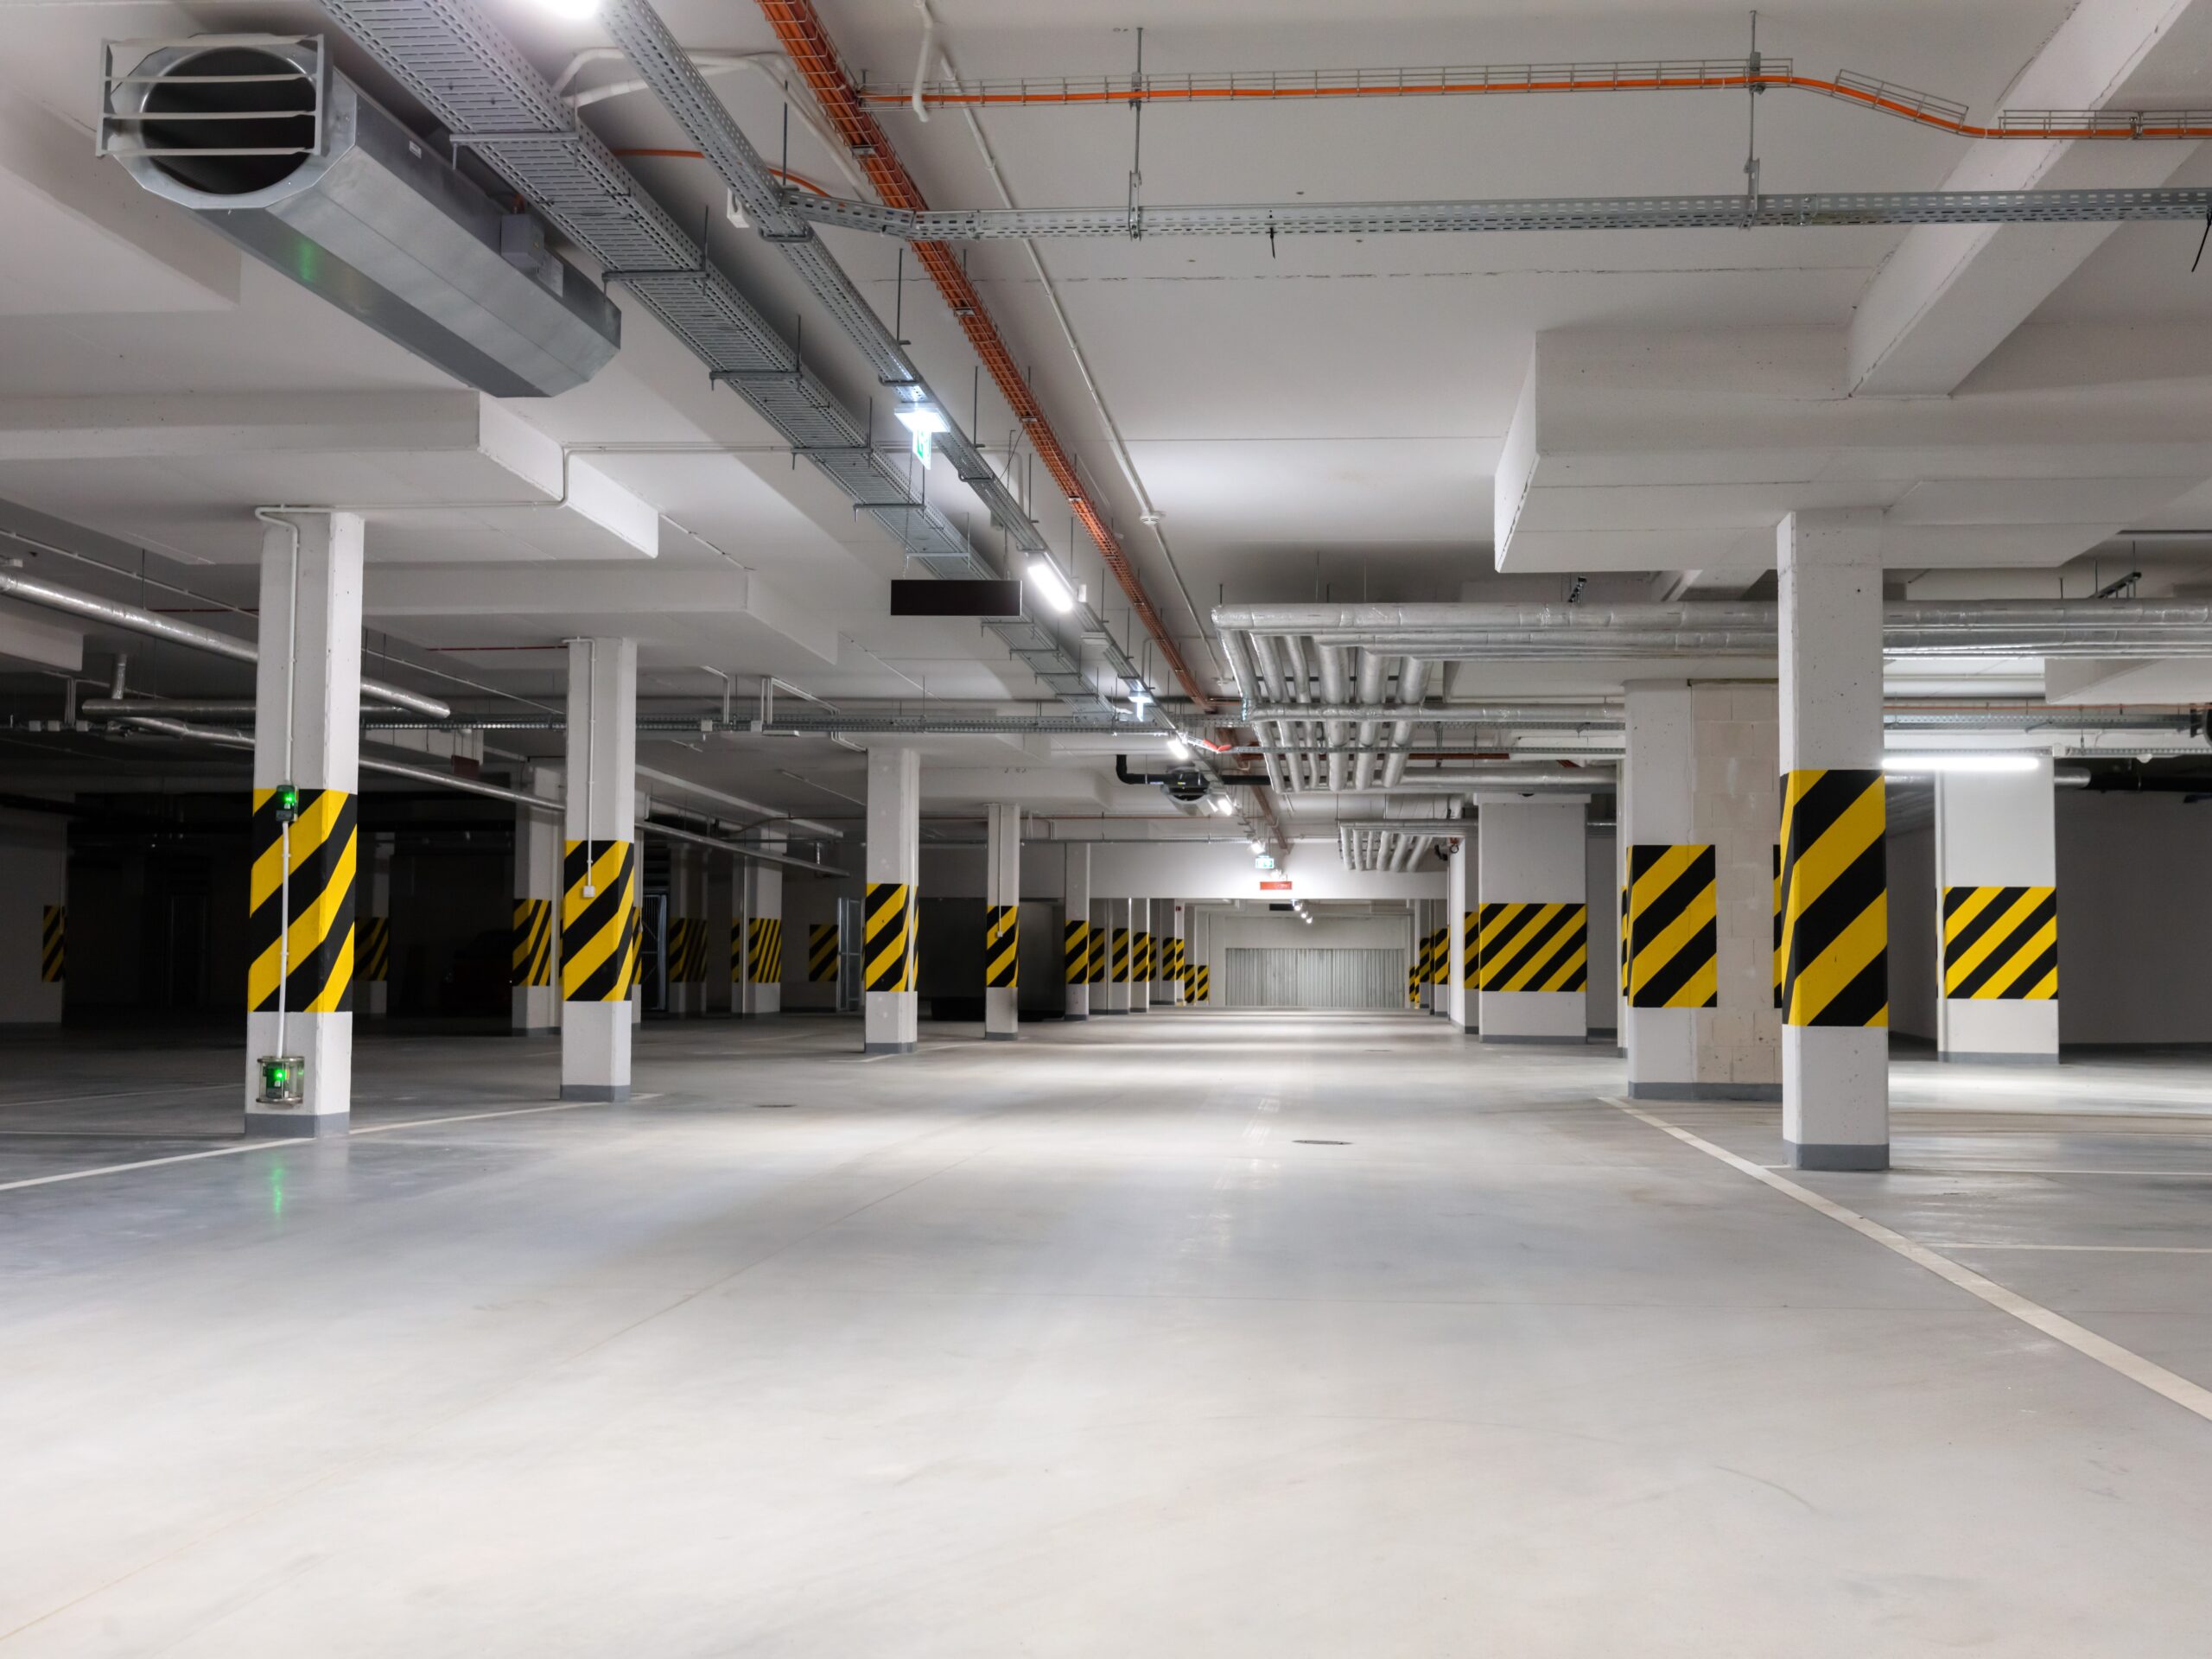 Underground empty parking garage. Modern urban space. Wide angle